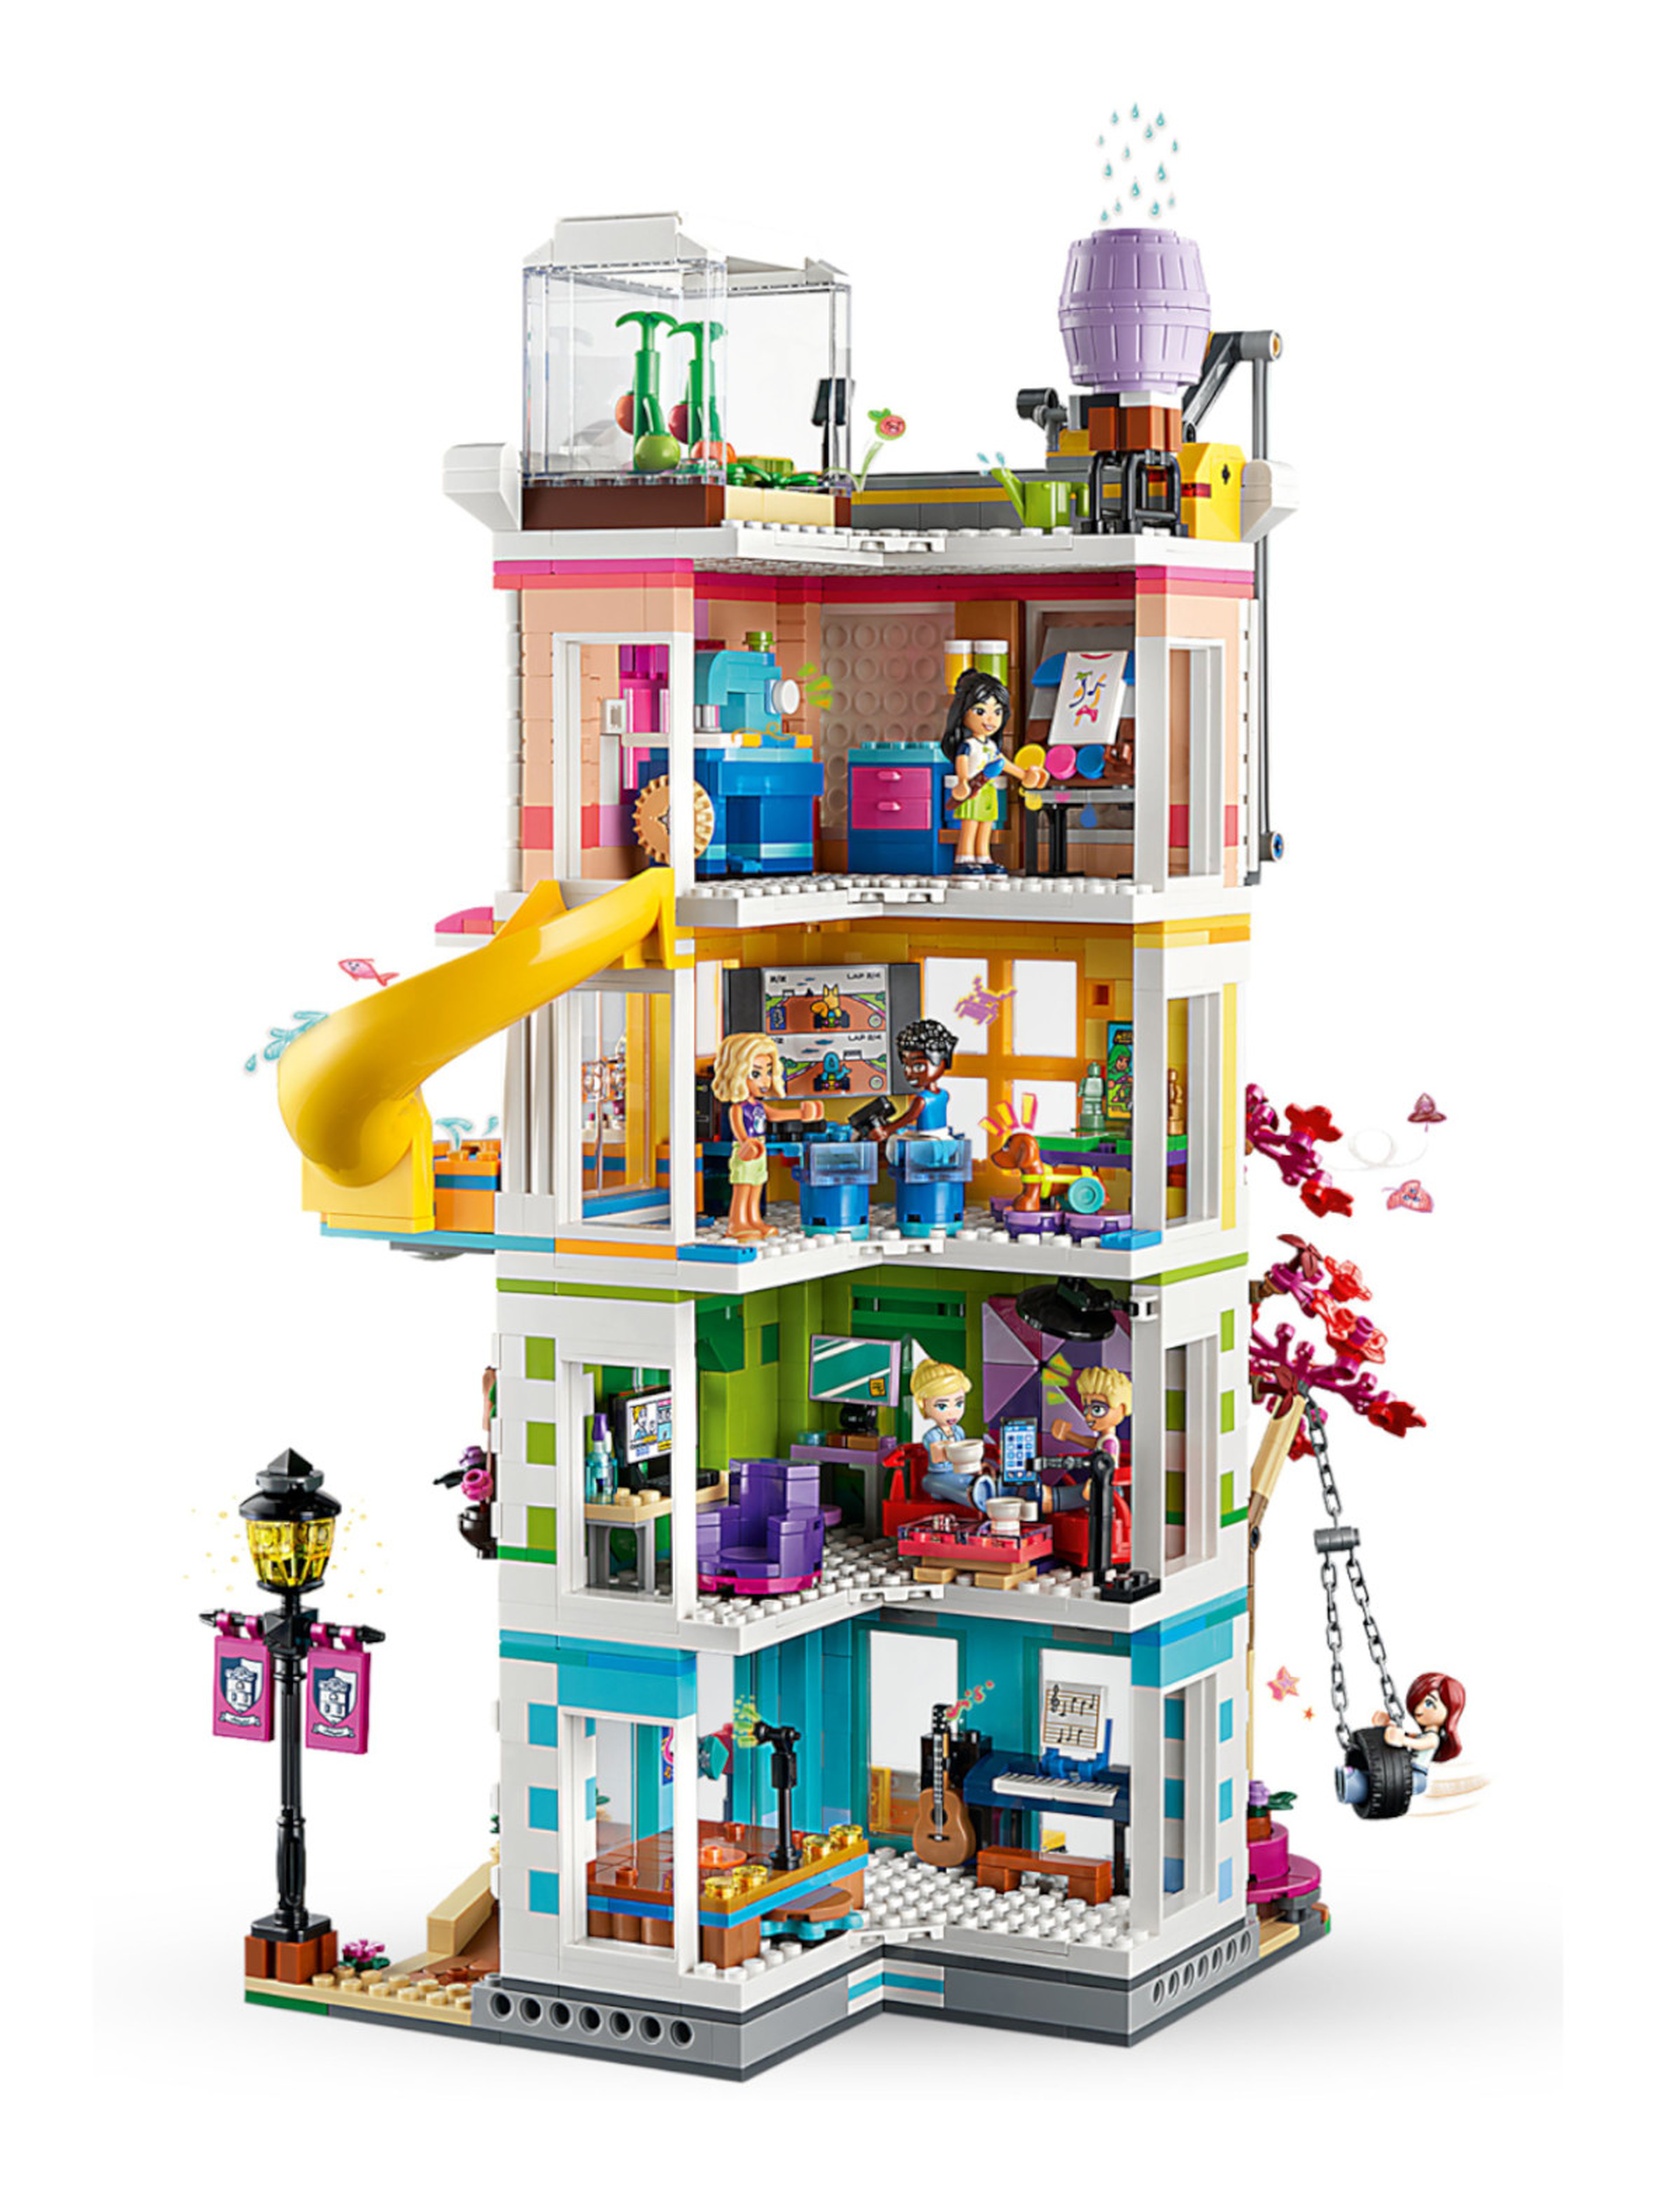 Klocki LEGO Friends 41748 Dom kultury w Heartlake - 1513 elementów, wiek 9 +